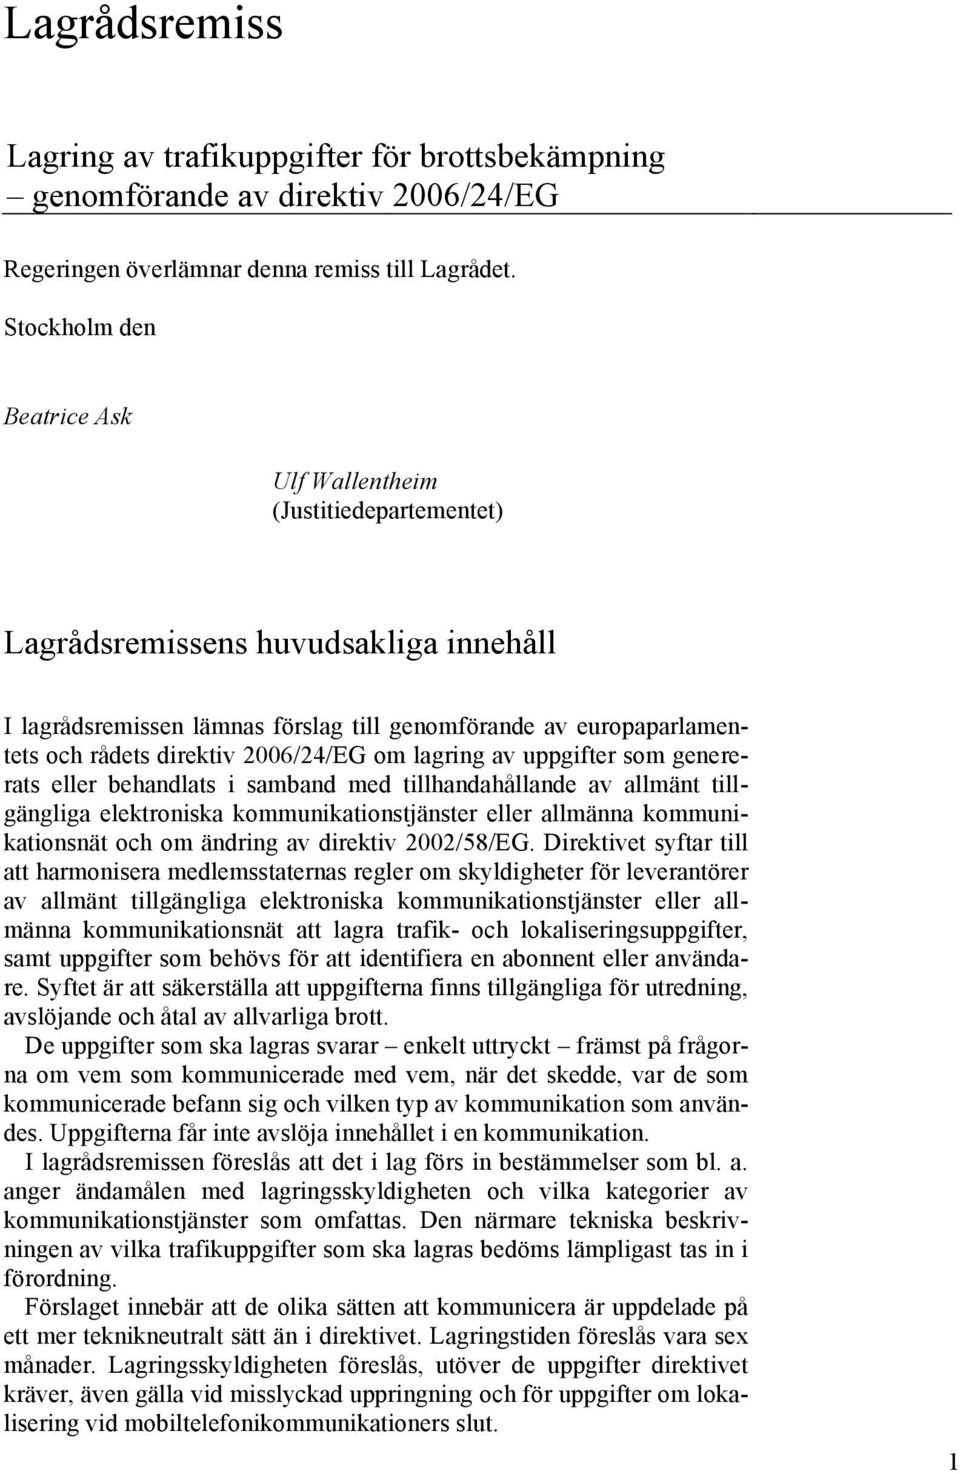 2006/24/EG om lagring av uppgifter som genererats eller behandlats i samband med tillhandahållande av allmänt tillgängliga elektroniska kommunikationstjänster eller allmänna kommunikationsnät och om